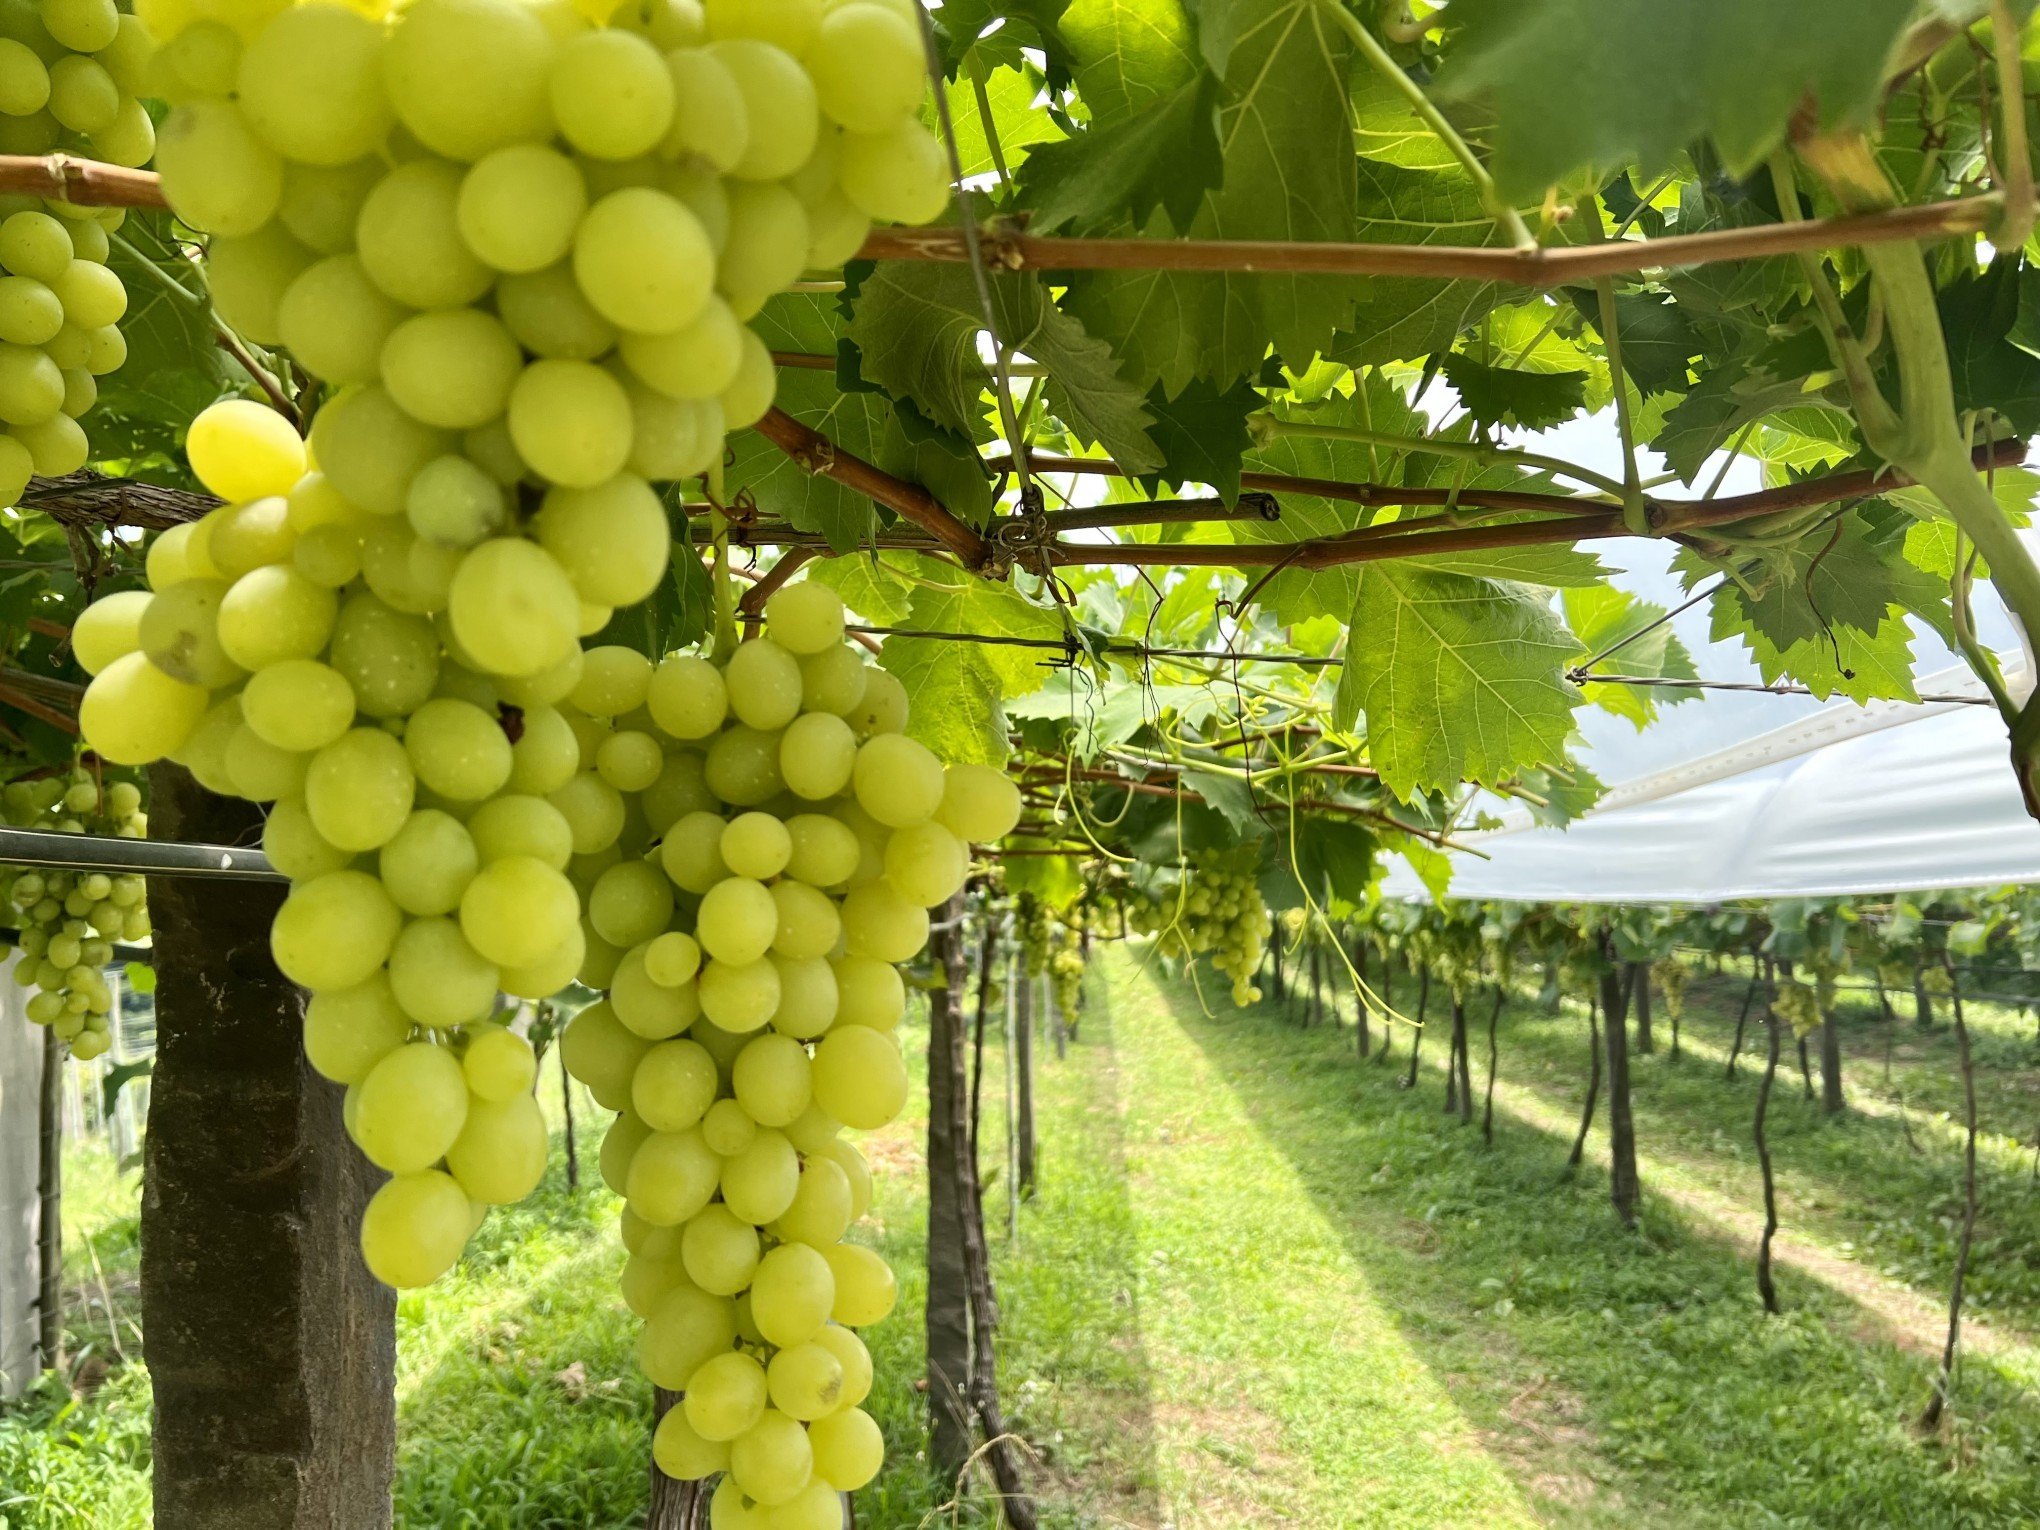 Workshop gratuito de vitivinicultura será oferecido em Gramado para incentivar produção